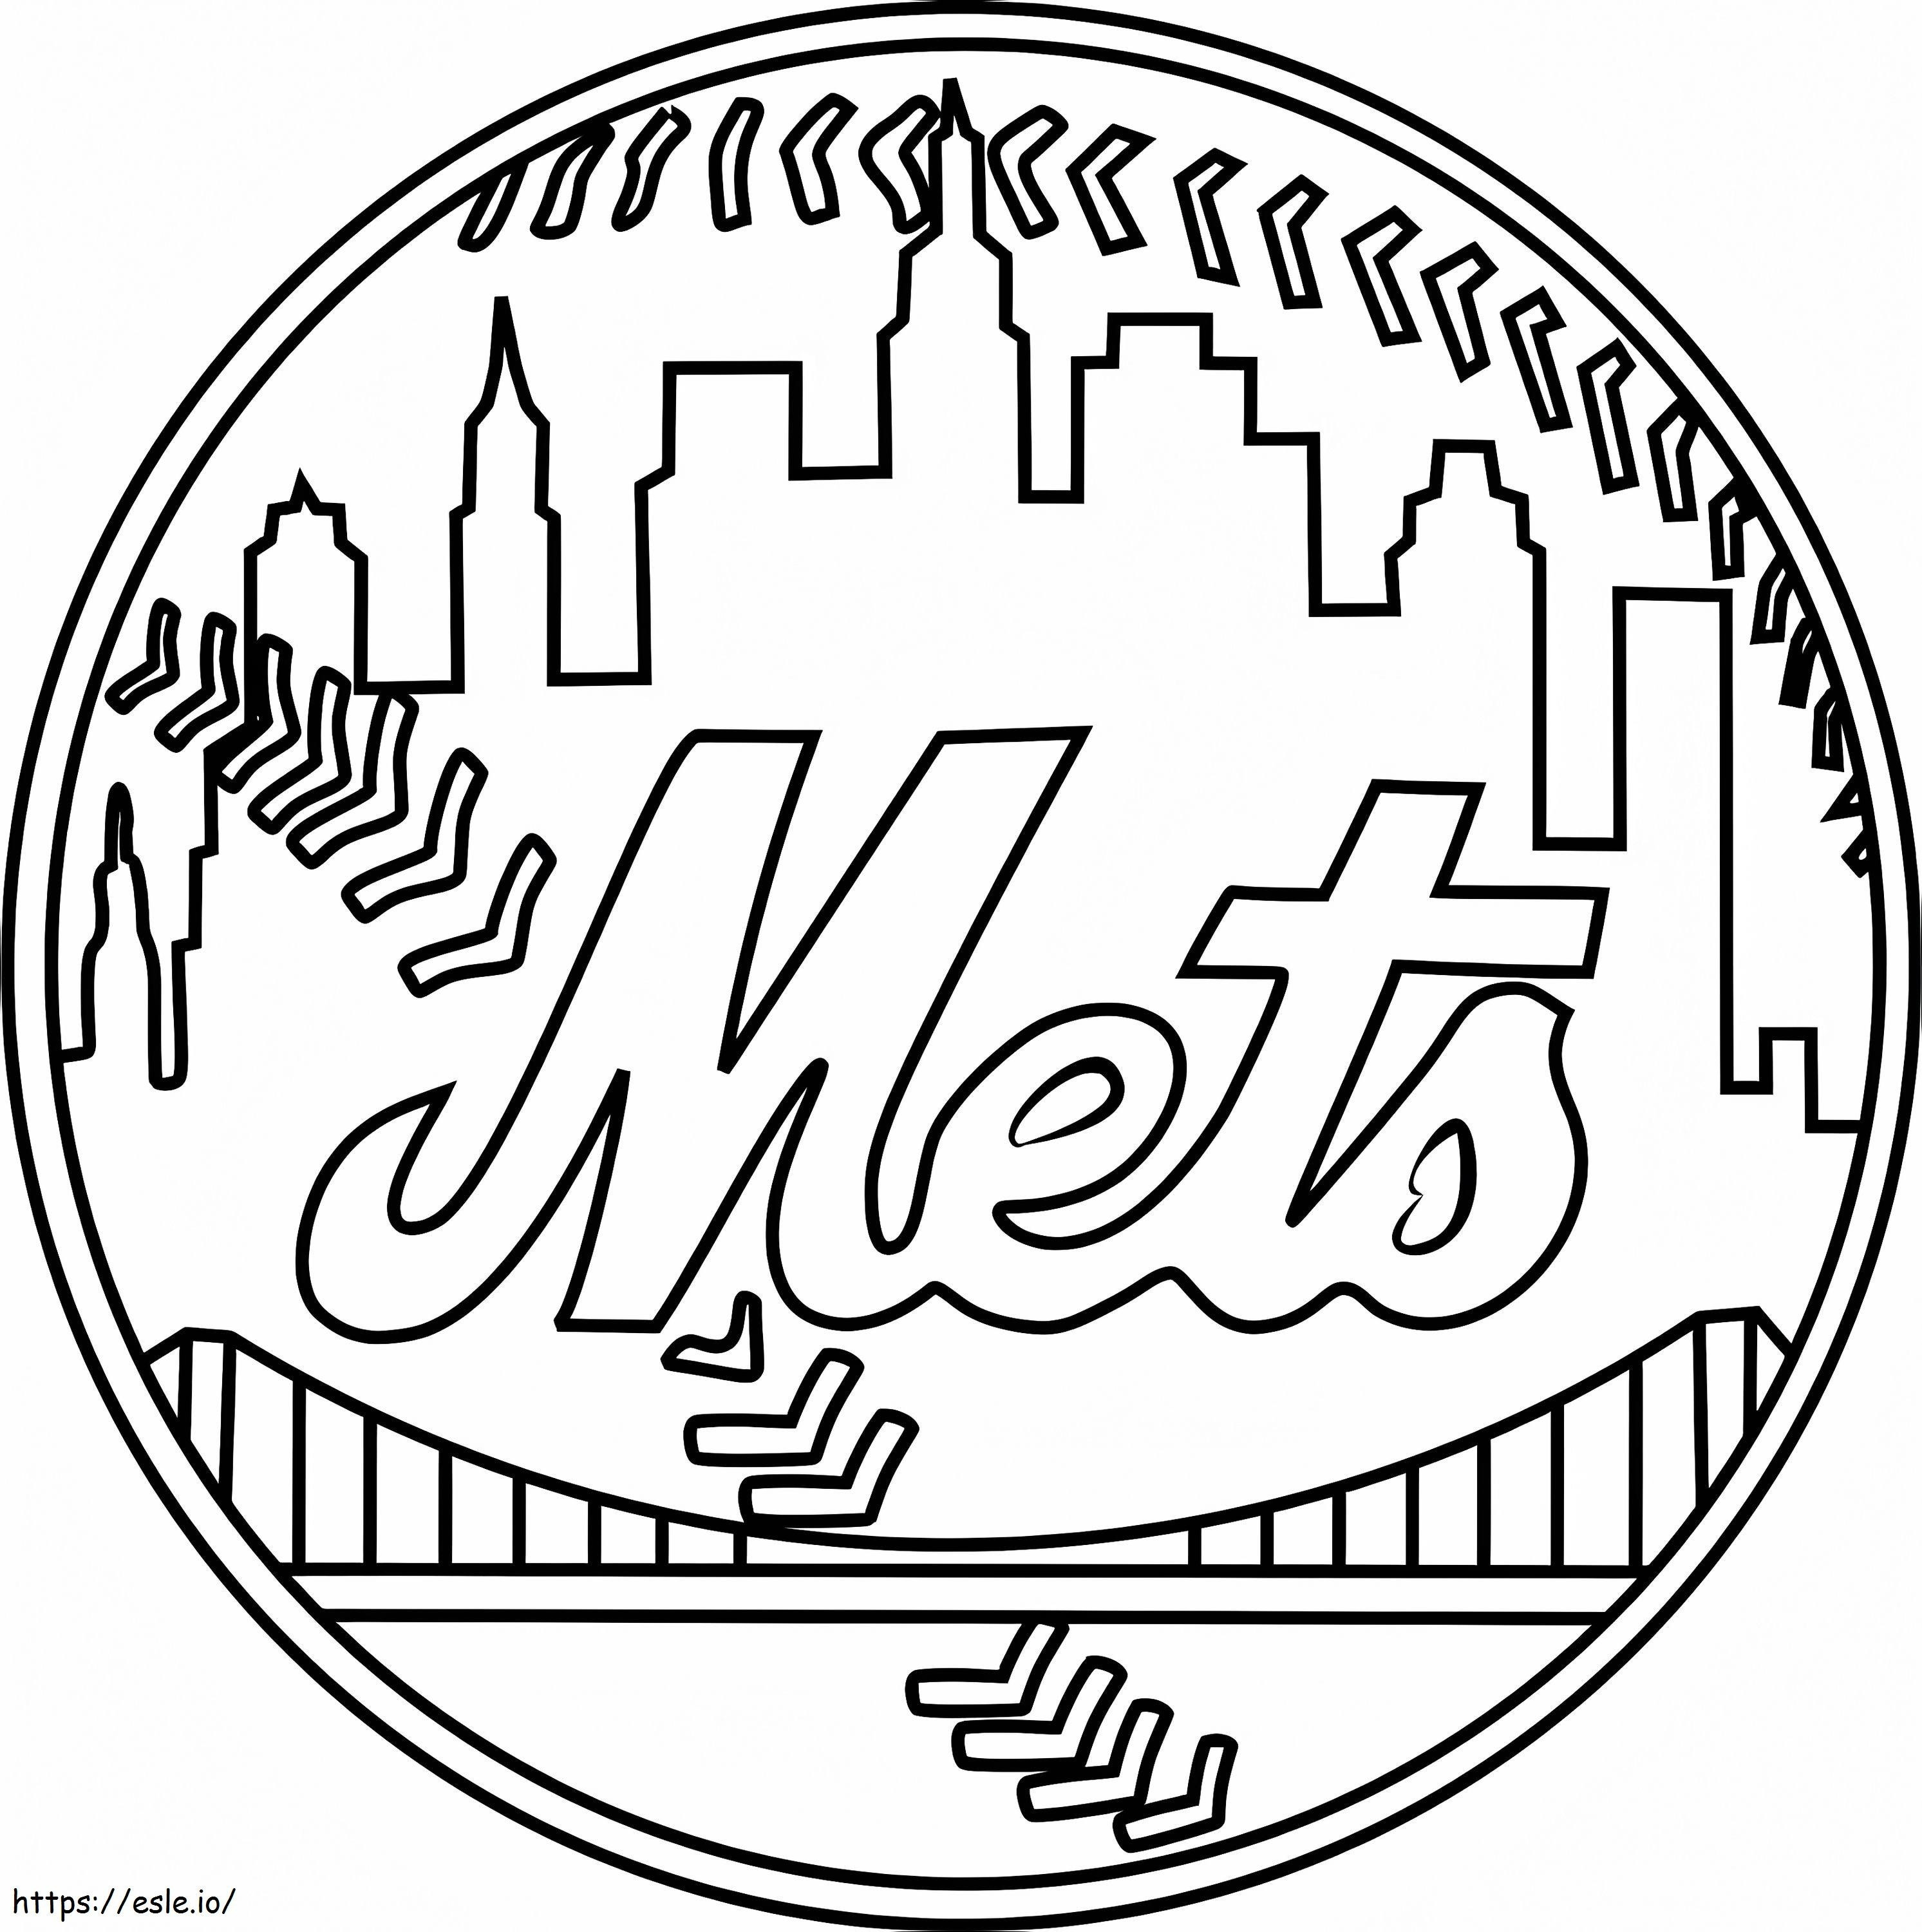 Logotipo de los Mets de Nueva York para colorear